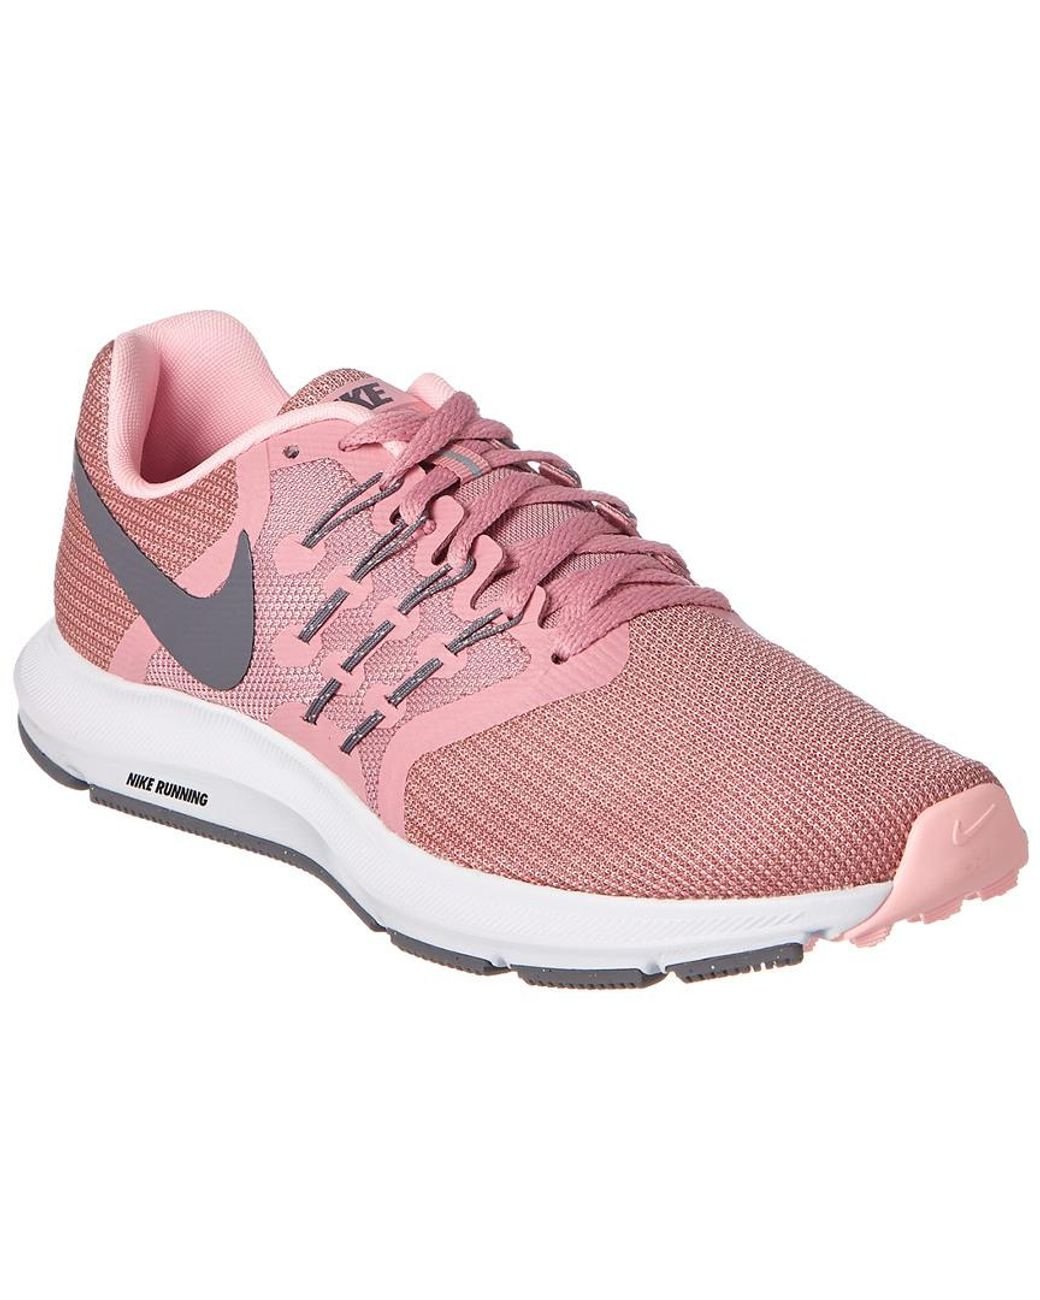 Nike Women's Running Shoe in Pink | Lyst